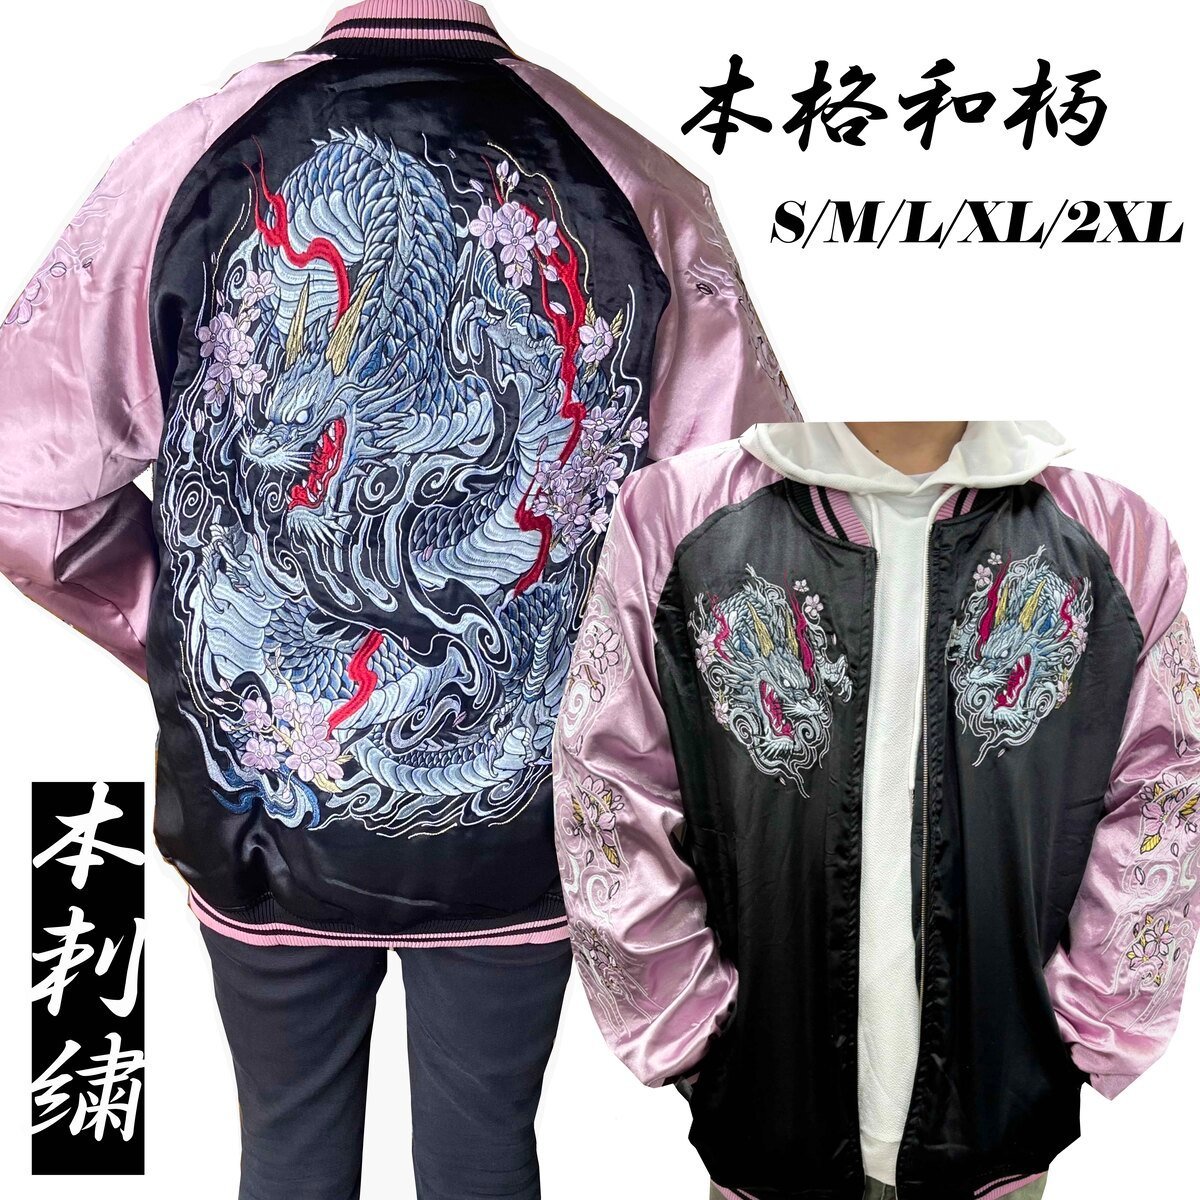 【C00249-5】スカジャン 龍 桜 ピンク 2XL 刺繍 柄 ジャンパー 上着 アウター バイカーズ ジャケット